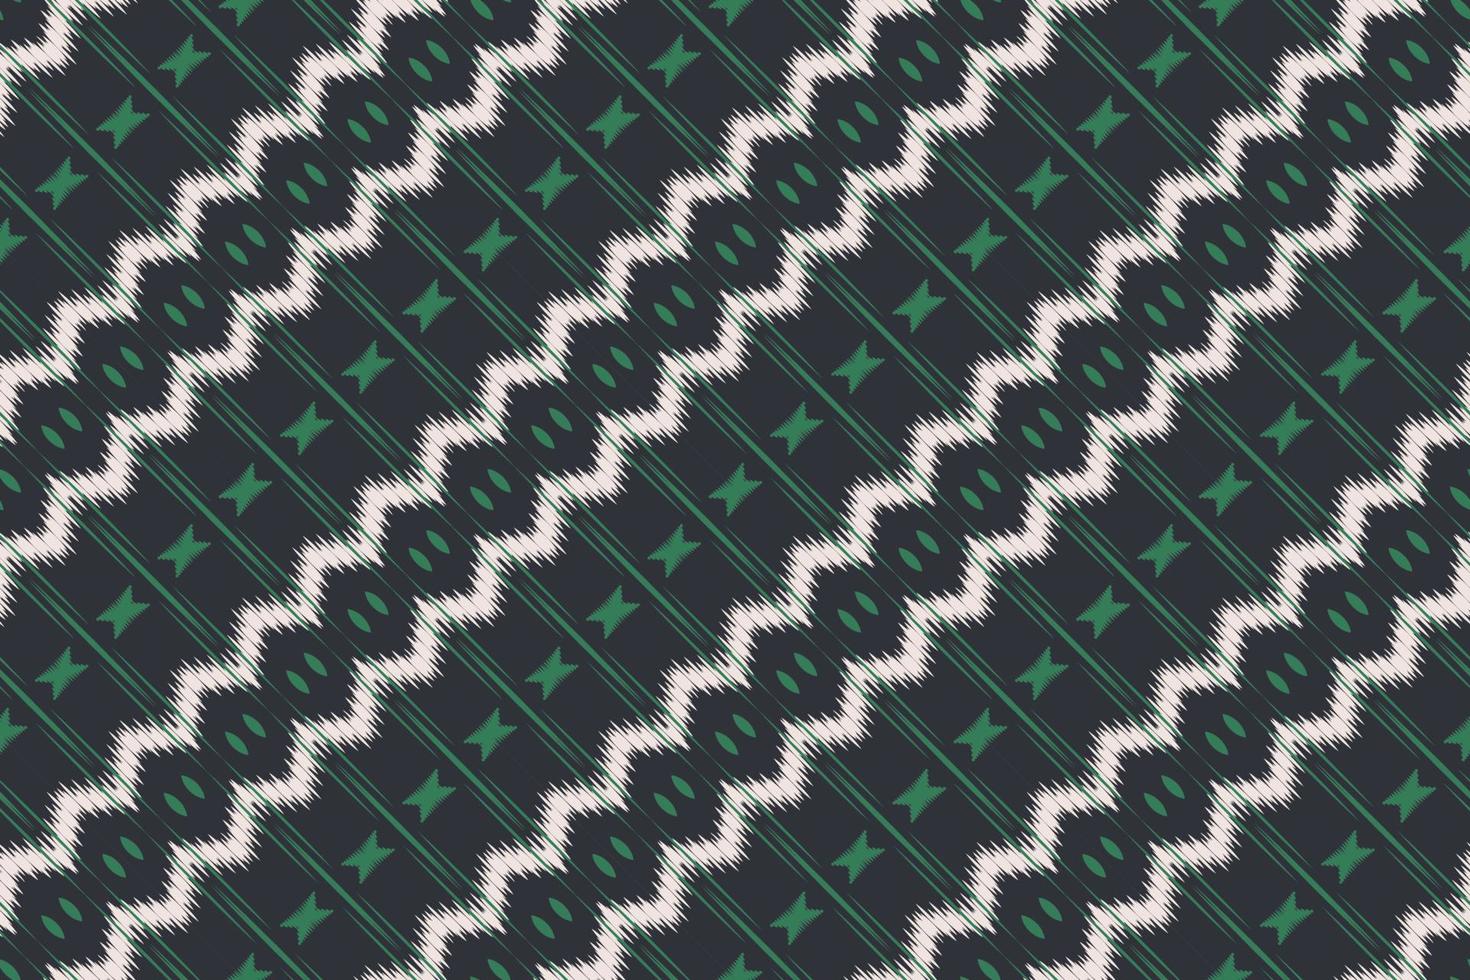 batik textil- ikat sparre sömlös mönster digital vektor design för skriva ut saree kurti borneo tyg gräns borsta symboler färgrutor eleganta